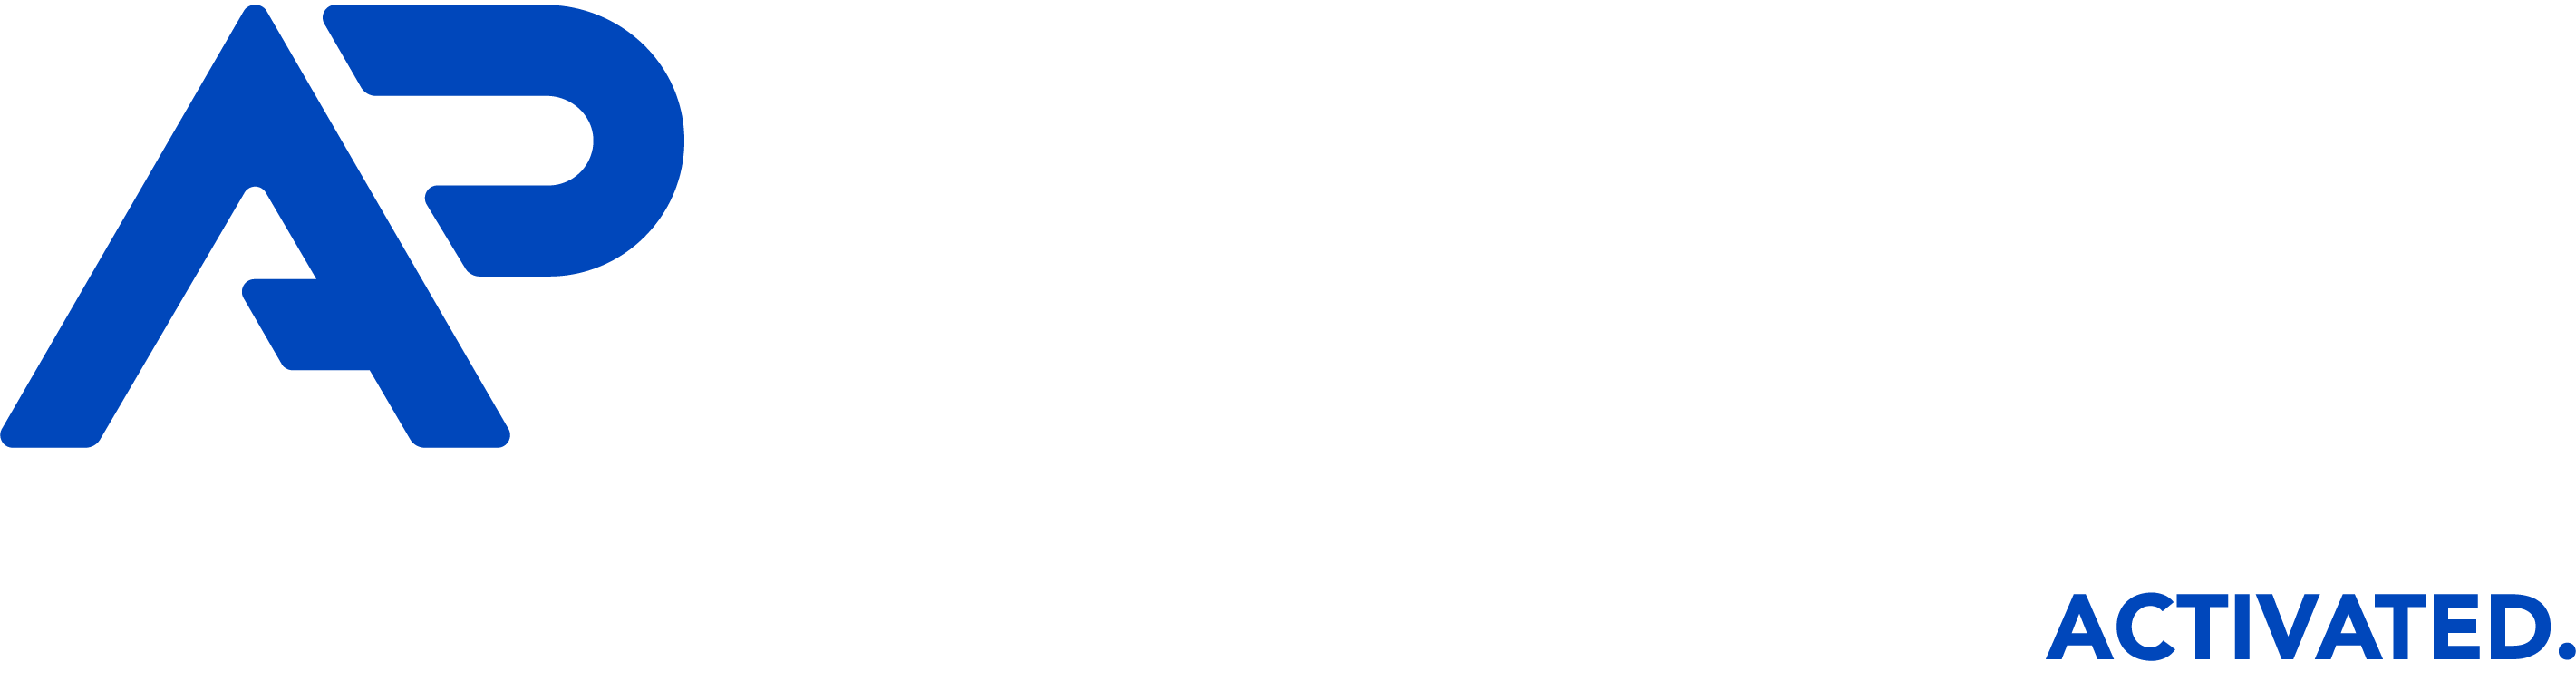 Advertiser Perceptions White Logo